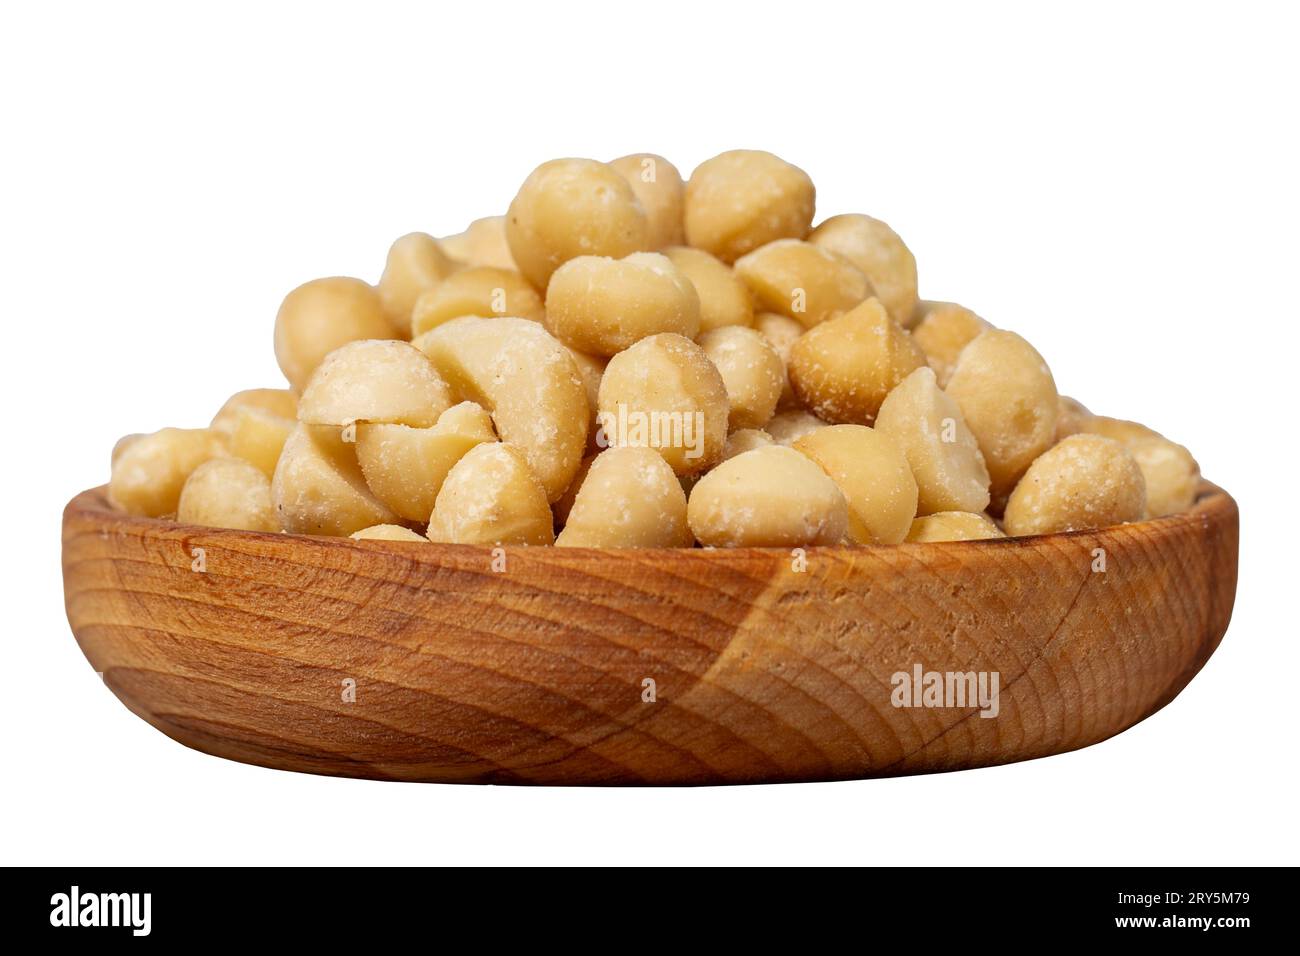 Noce di macadamia in un recipiente di legno. Noci di macadamia sbucciate isolate su sfondo bianco Foto Stock